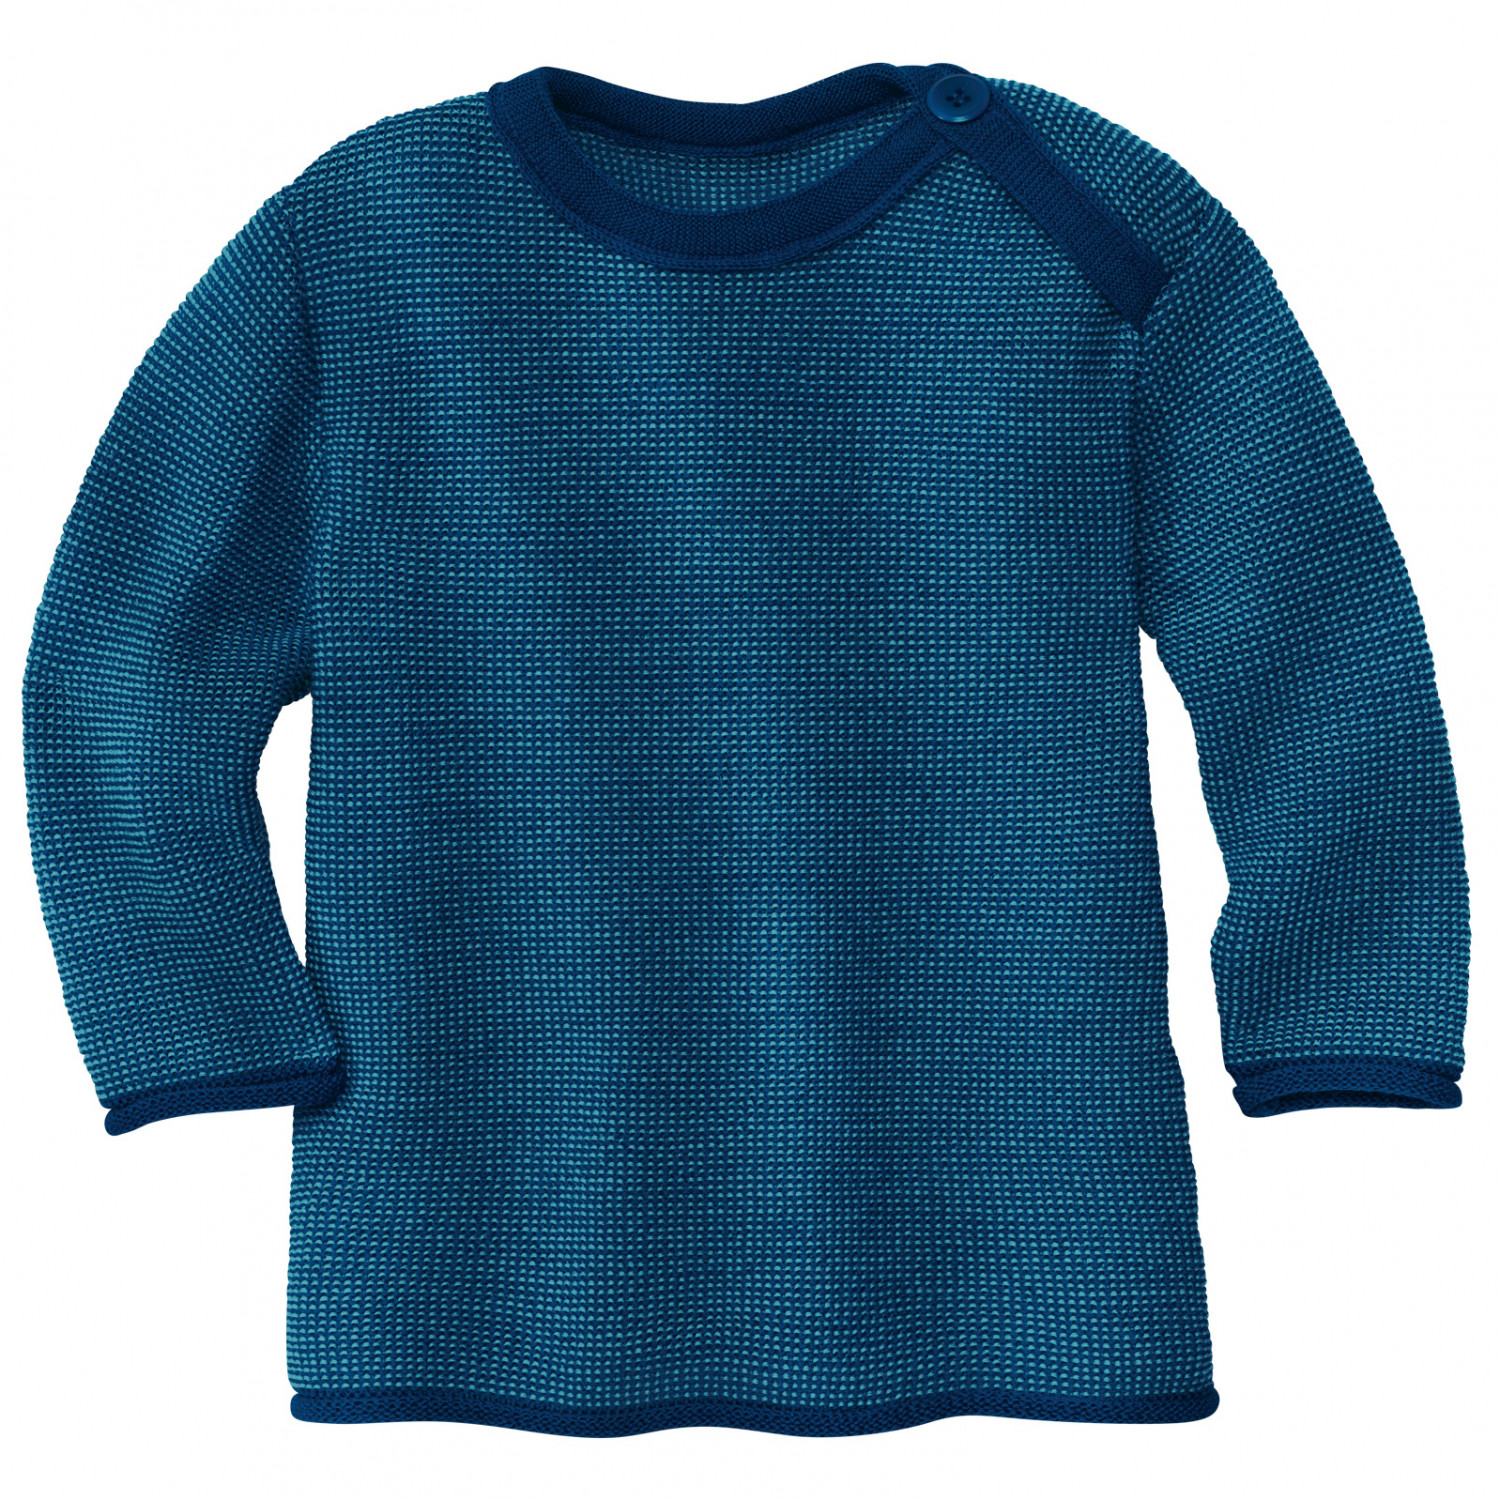 Свитер из мериноса Disana Kid's Melange Pullover, цвет Navy/Lagoon свитер для активного отдыха reima sweater haave navy рост 152